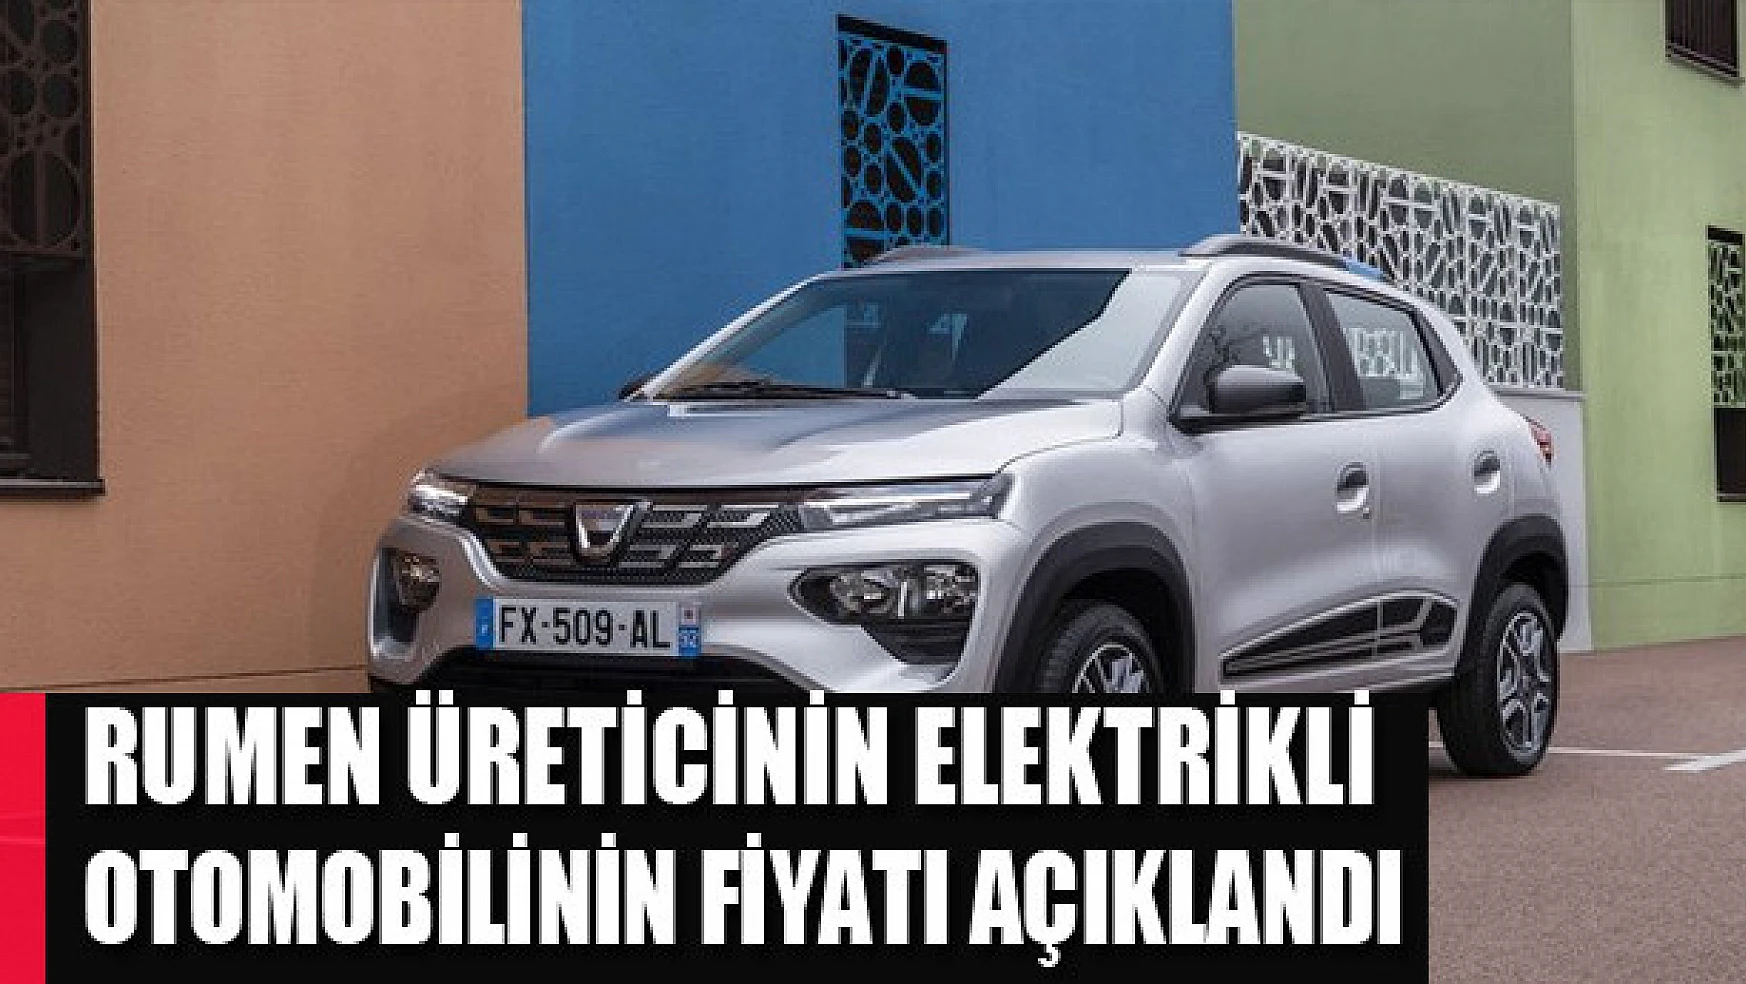 Rumen üreticinin elektrikli otomobilinin fiyatı açıklandı